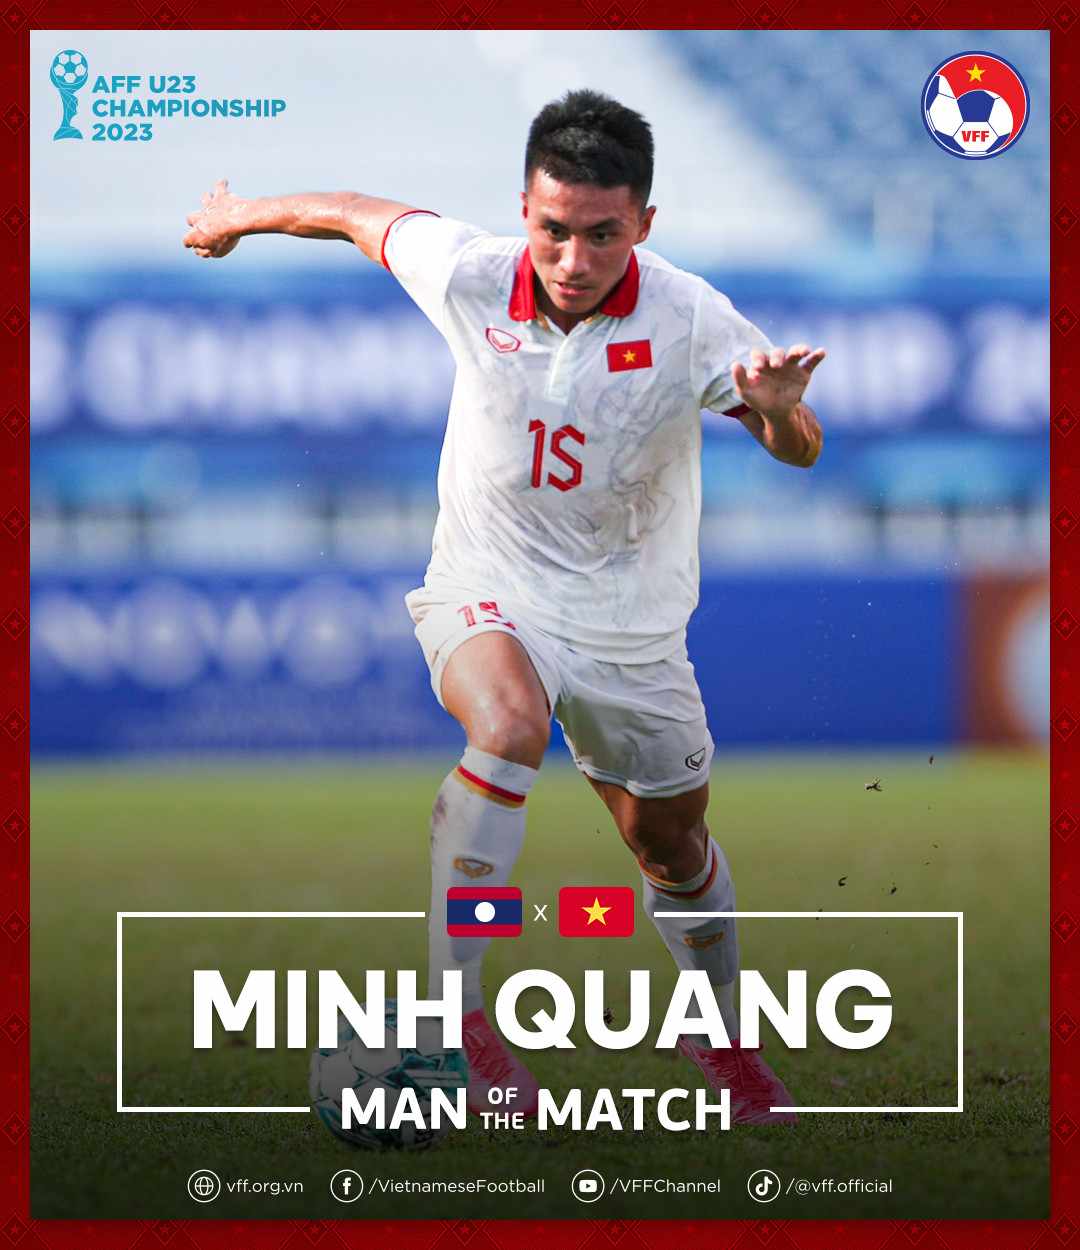 Nguyễn Minh Quang được bầu chọn là Cầu thủ xuất sắc nhất trận U23 Việt Nam thắng U23 Lào 